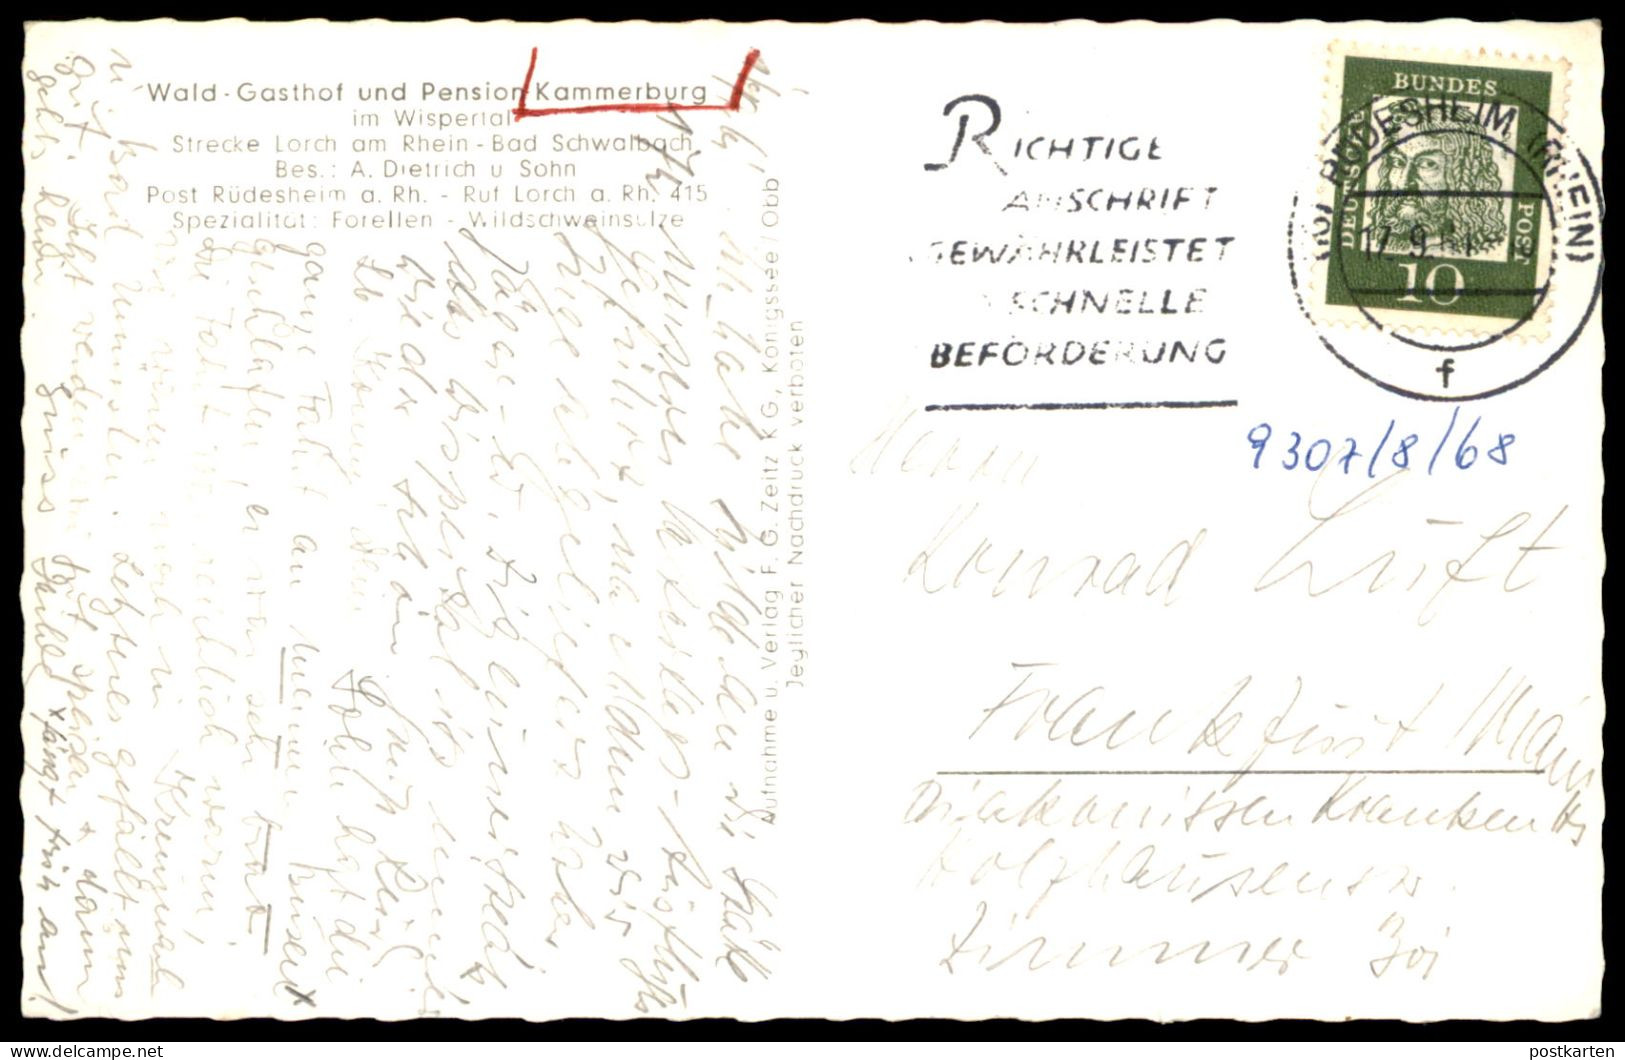 ÄLTERE POSTKARTE WALD-GASTHOF KAMMERBURG STRECKE LORCH BAD SCHWALBACH WISPERTAL POST RÜDESHEIM Postcard AK Ansichtskarte - Lorch